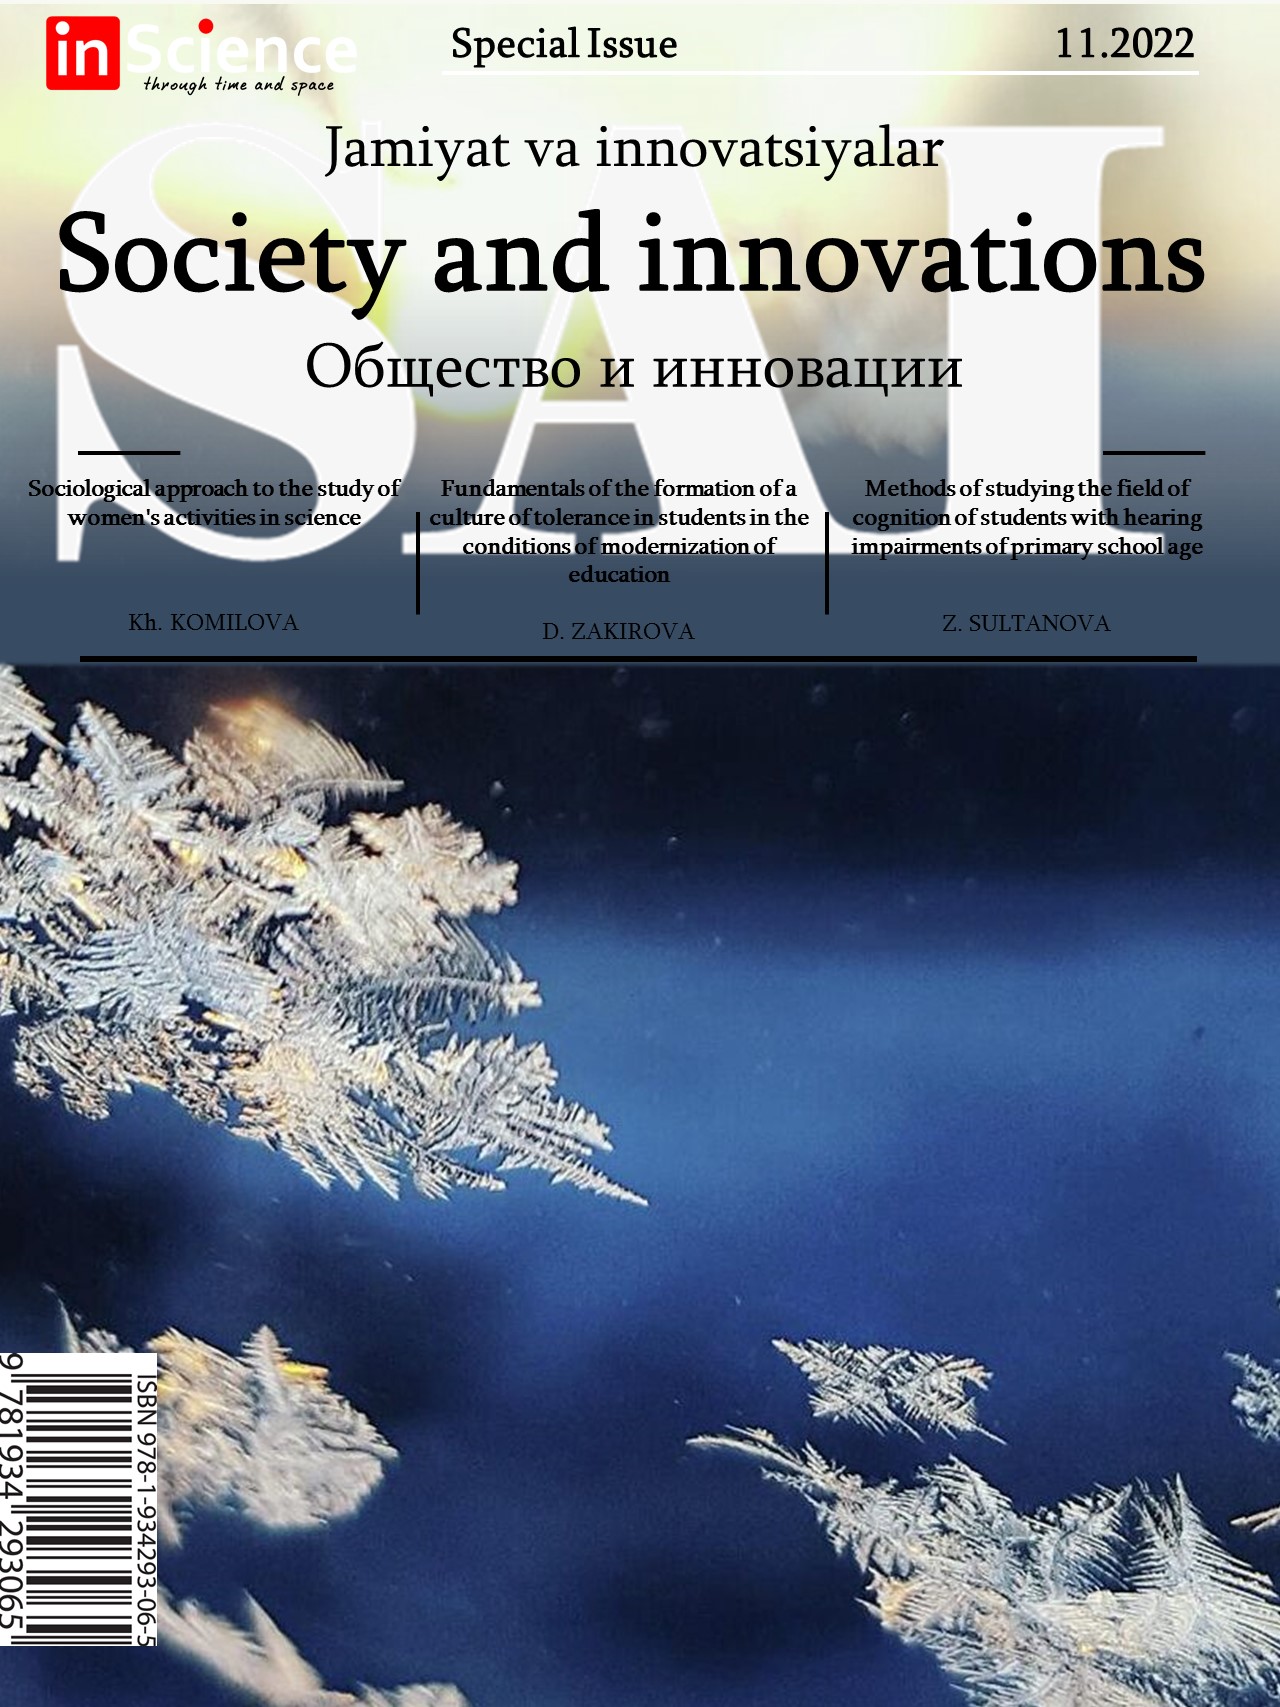 						Показать Том 3 № 11/S (2022): Спецвыпуск междисциплинарного электронного научного журнала «Общество и инновации»
					